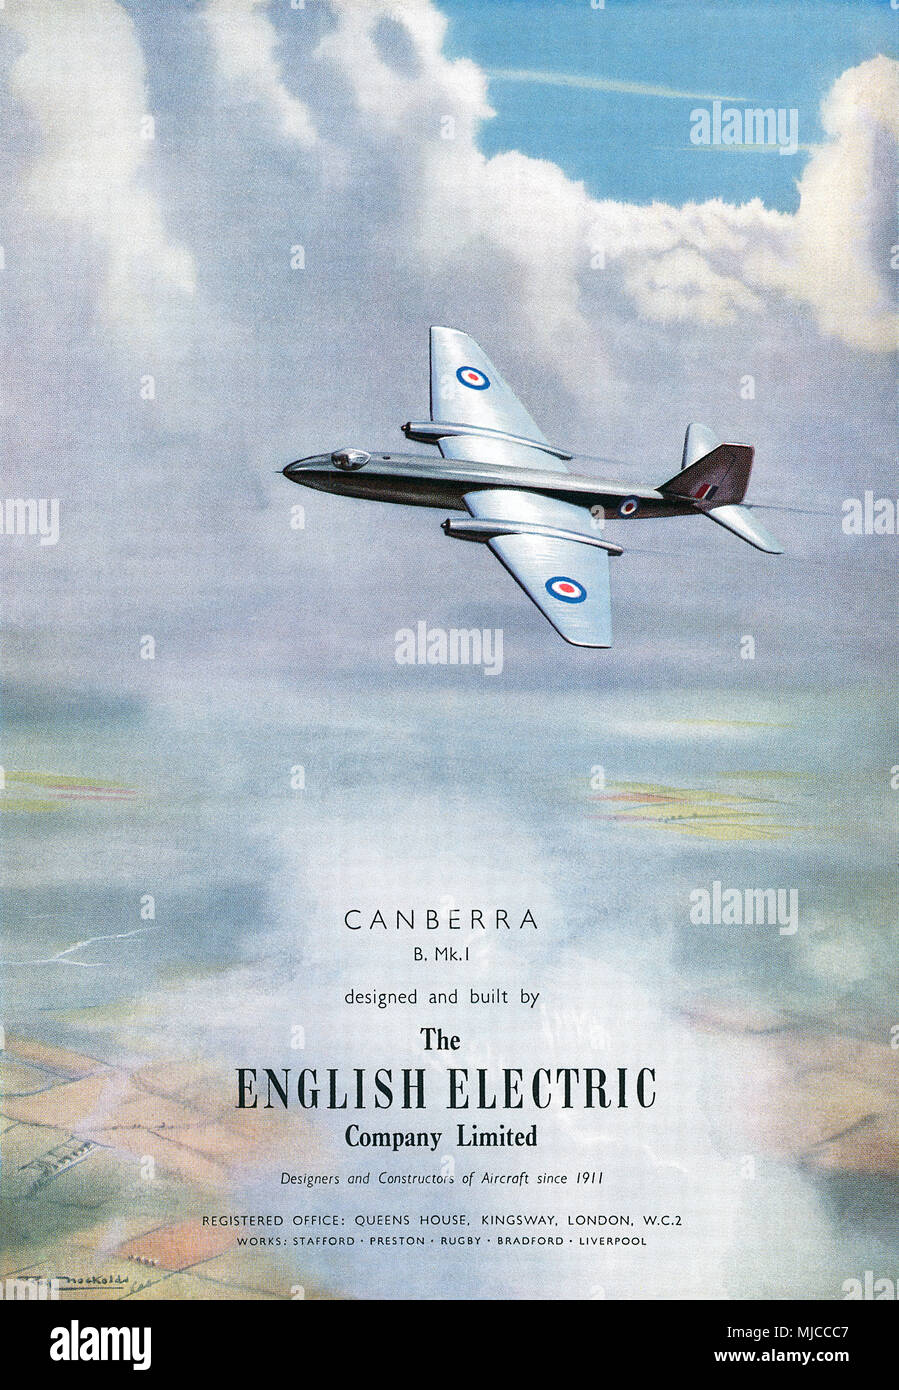 1950 britischen Werbung für die English Electric Canberra Jet Bomber Aircraft. Stockfoto